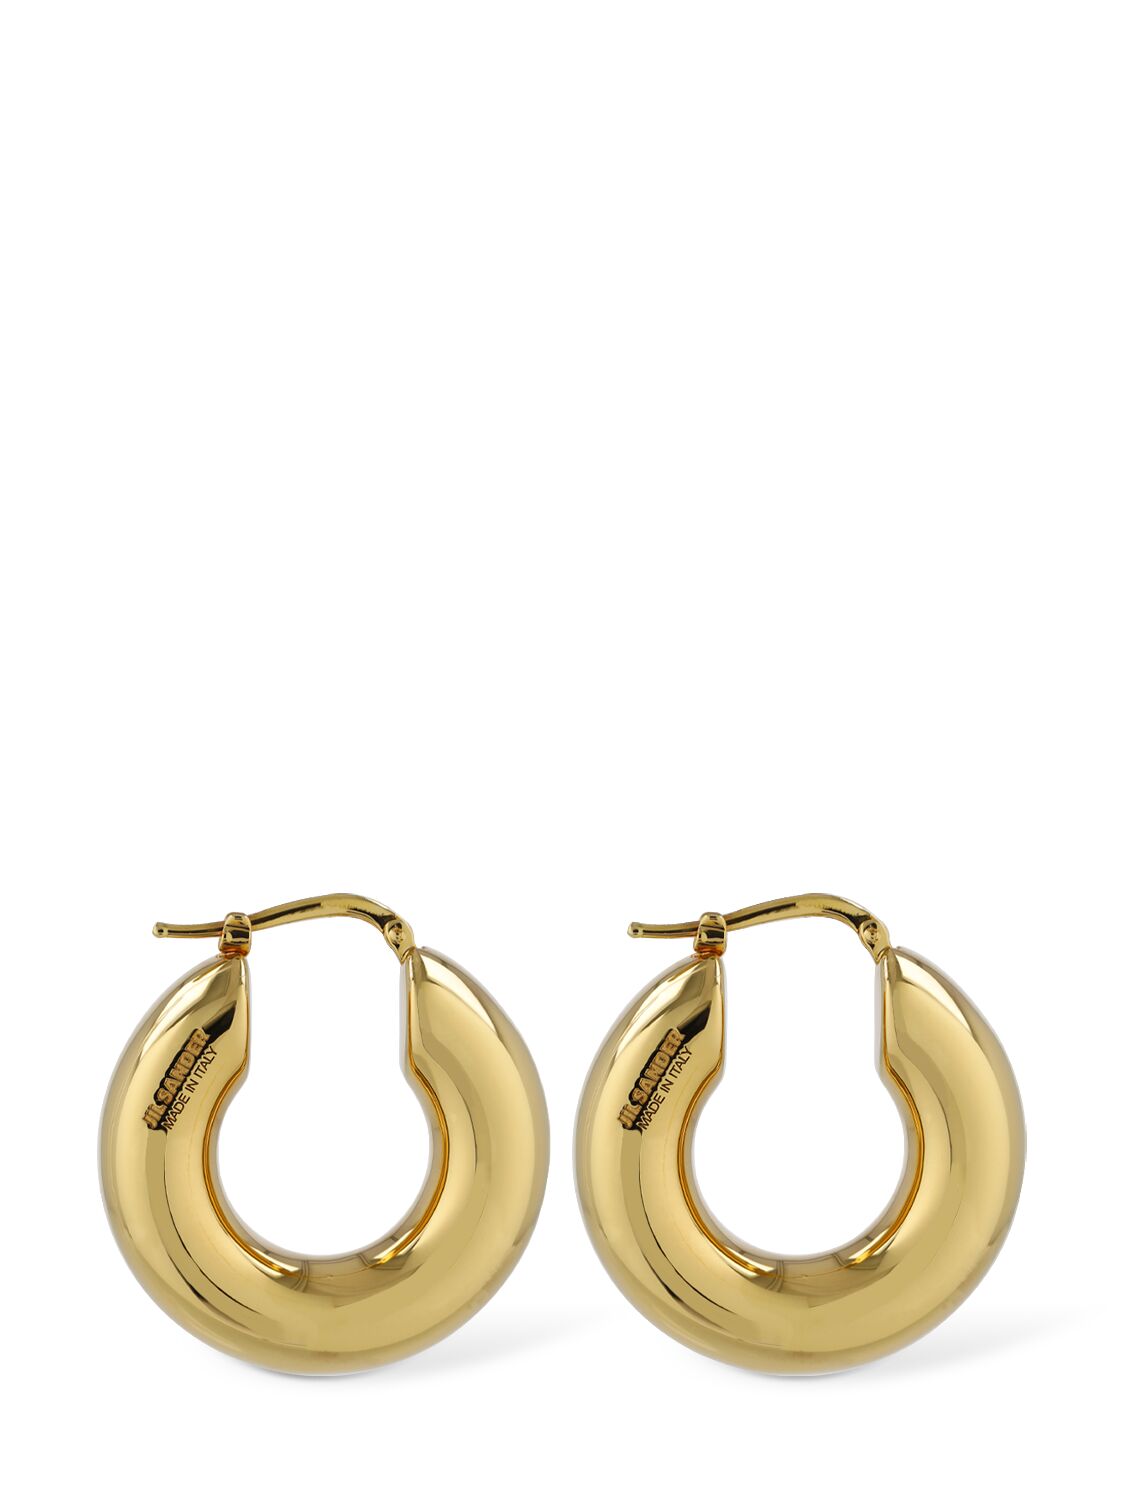 Image of Bc6 Hoop 3 Earrings